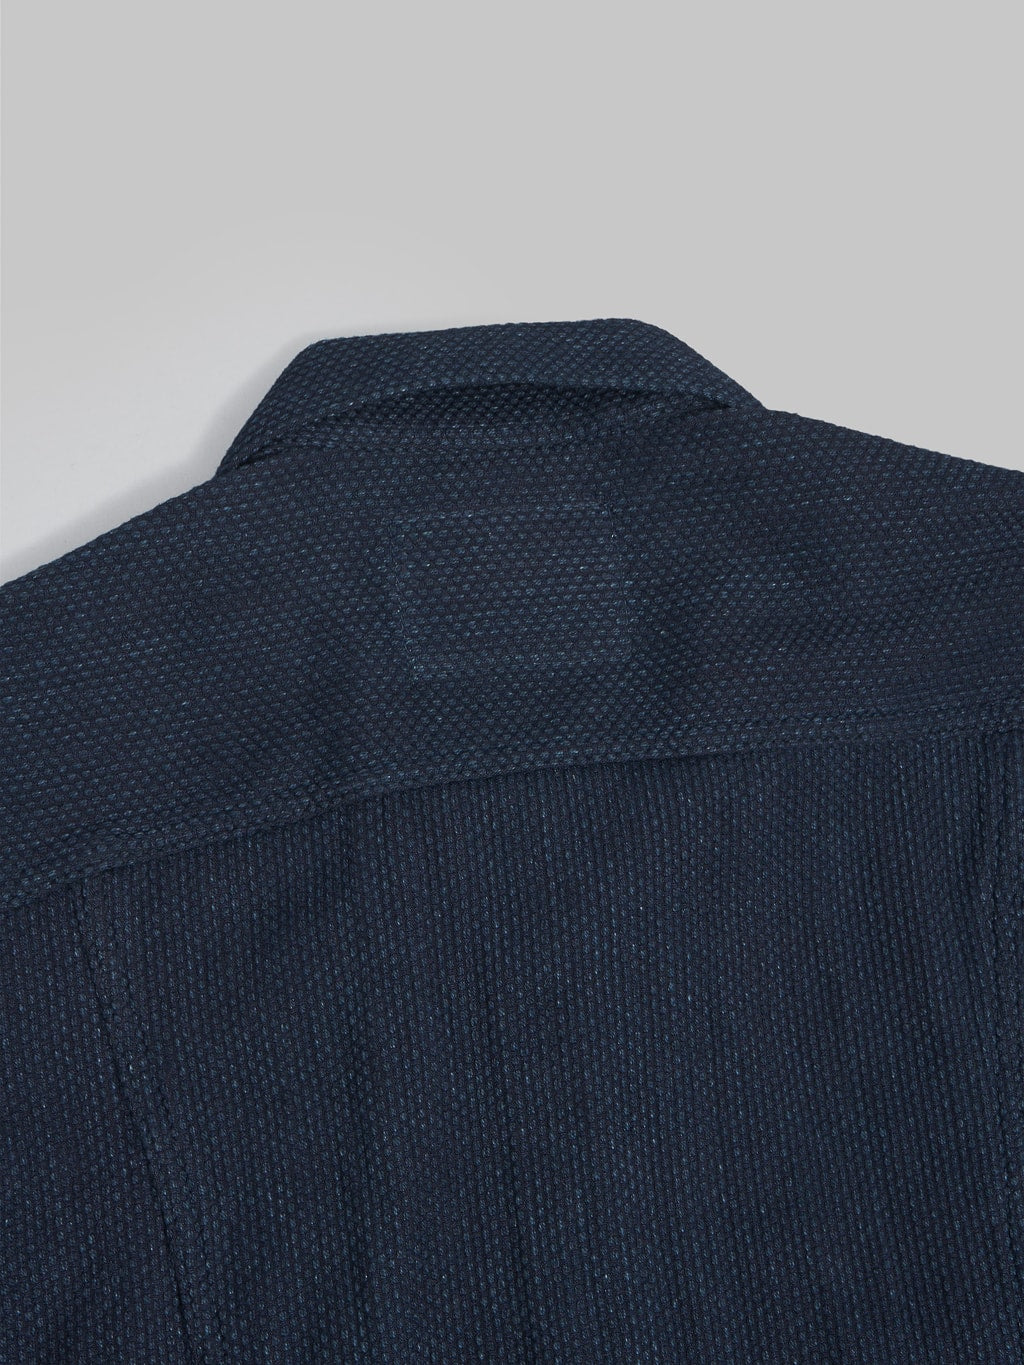 Japan Blue Indigo Sashiko type II jacket  fabric